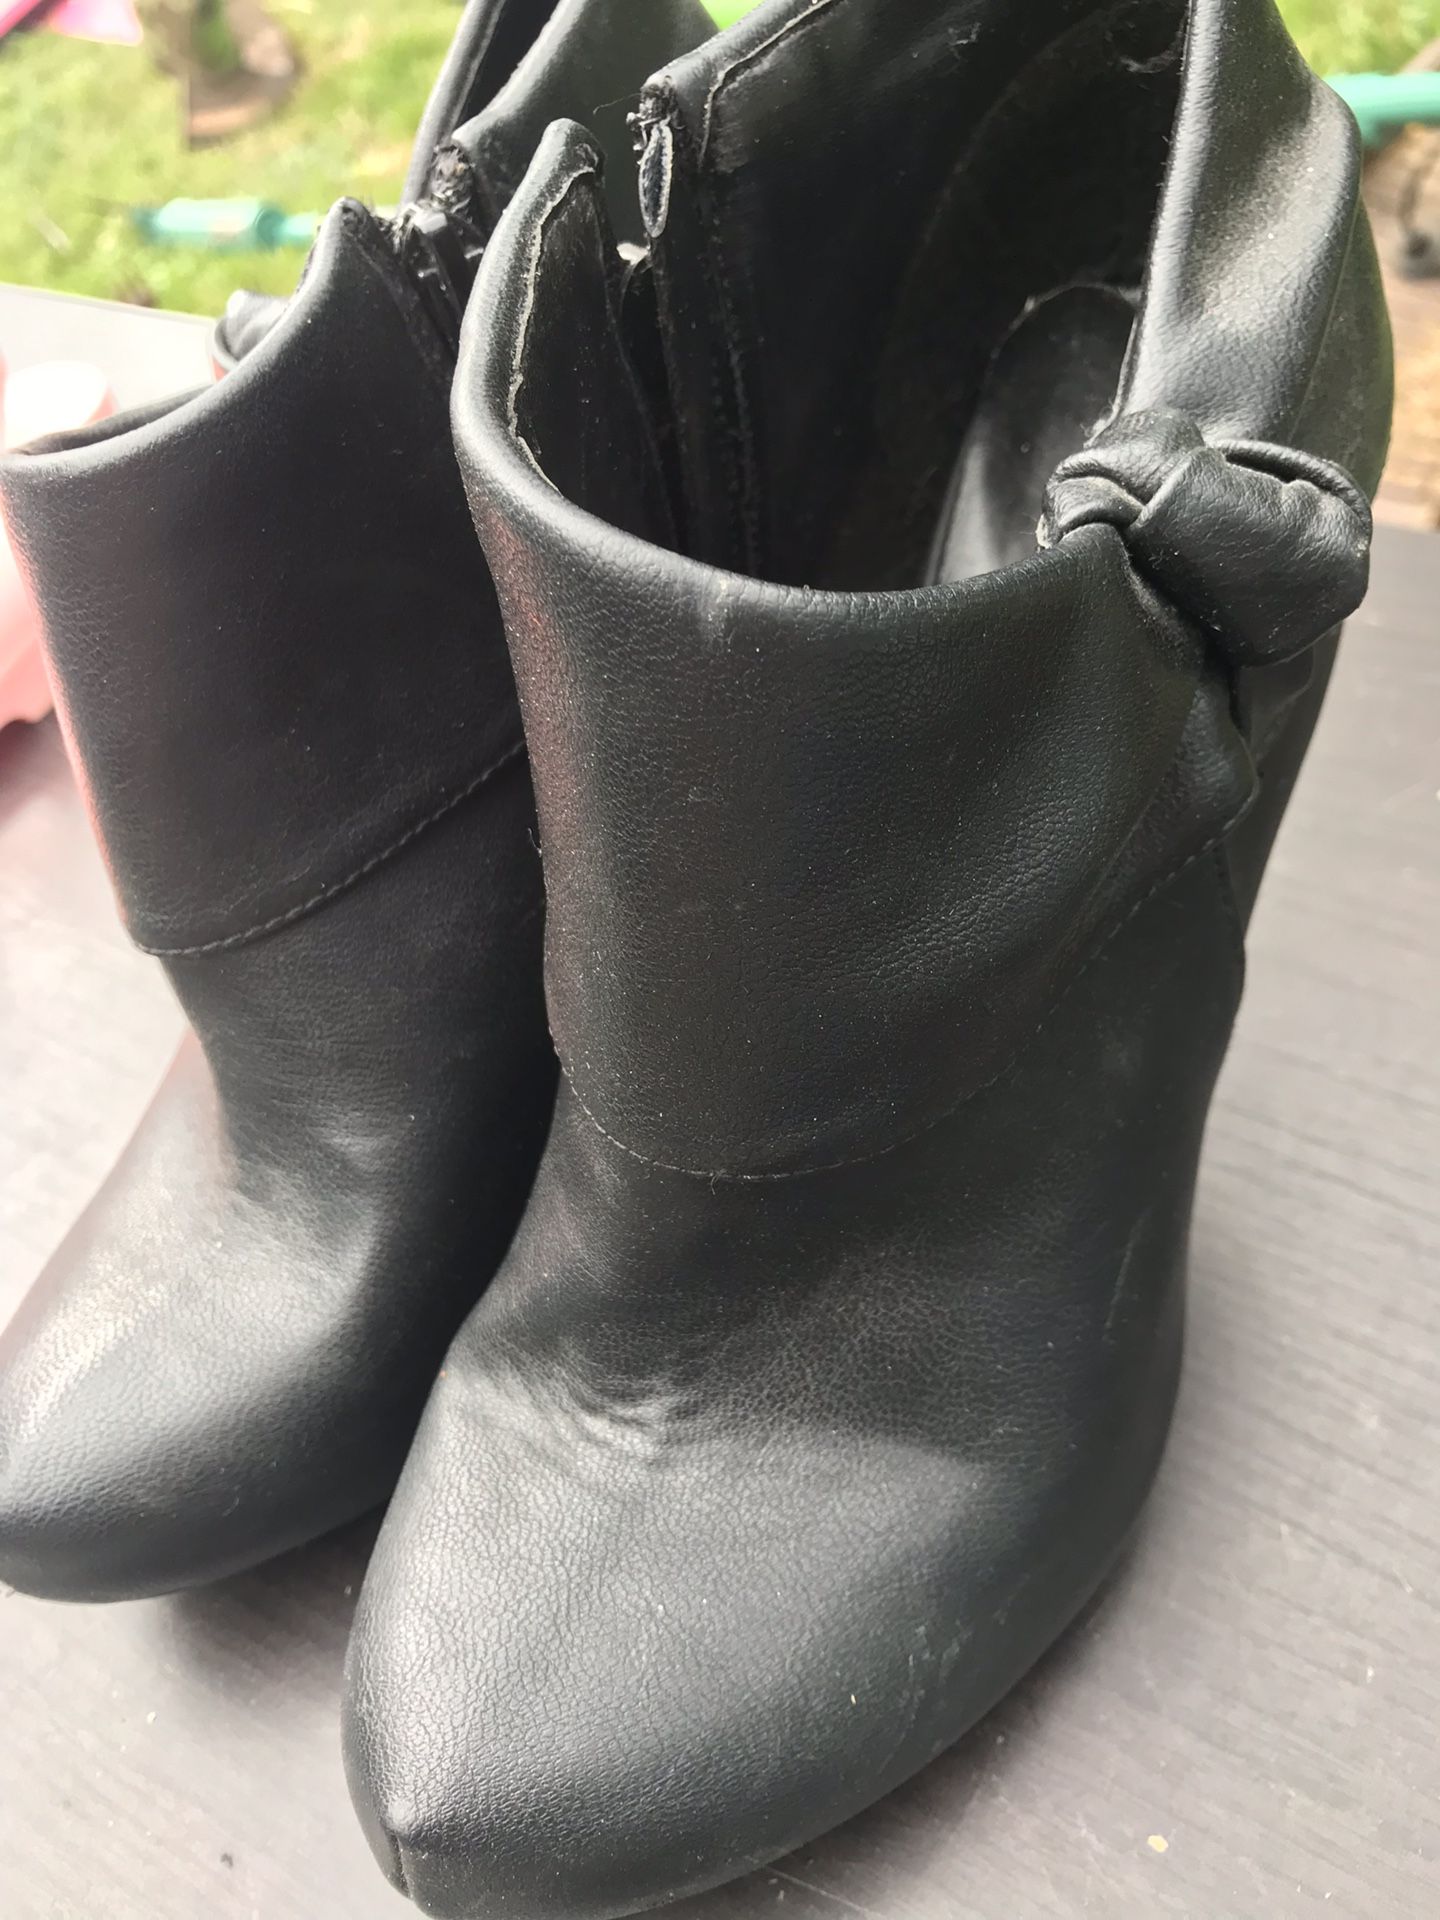 Bootie Heels - Brand New Size 8.5